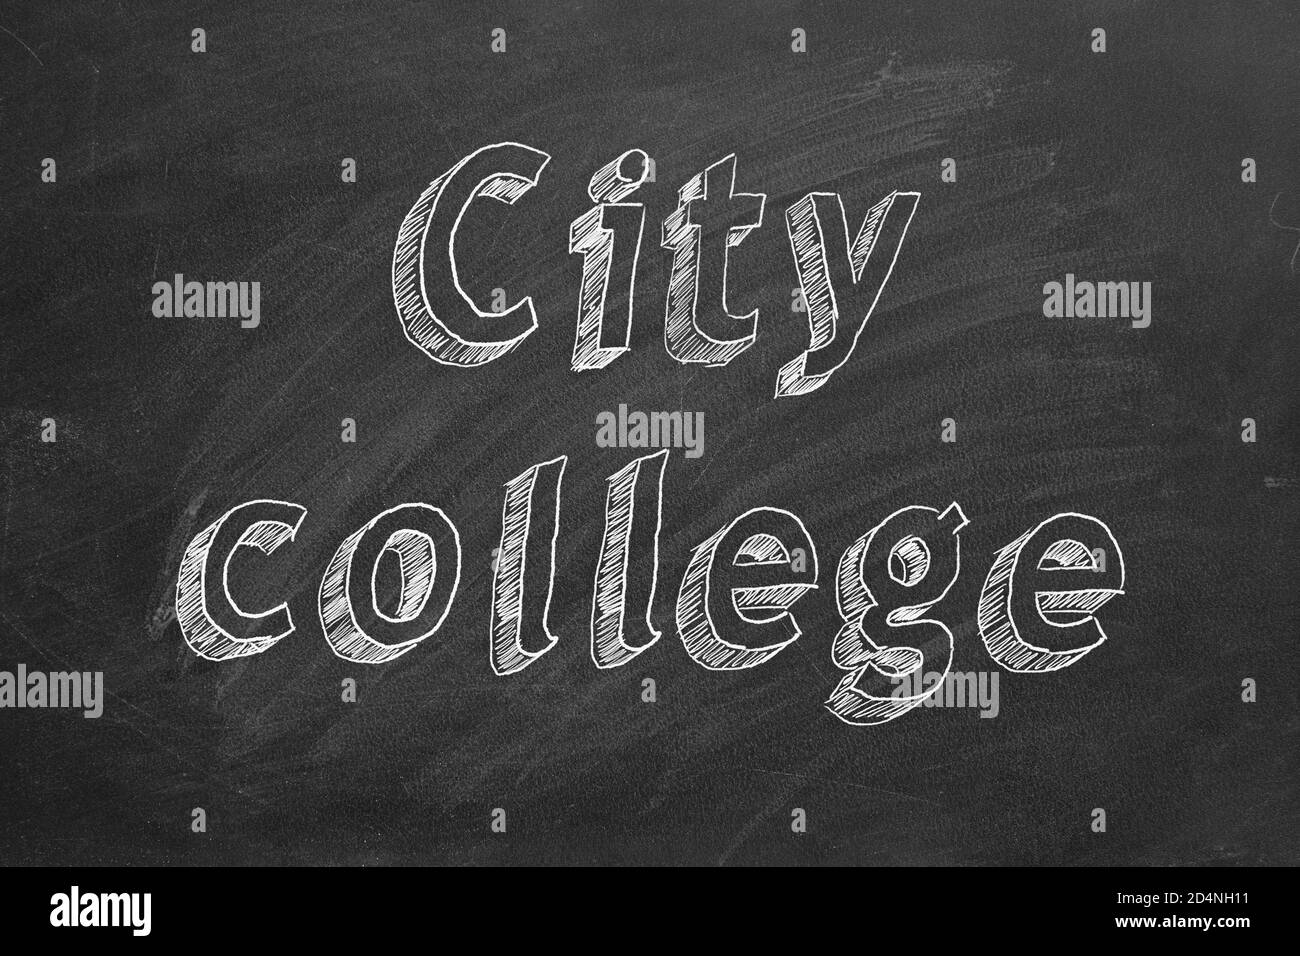 Handzeichnung 'City College' auf schwarzer Tafel Stockfoto